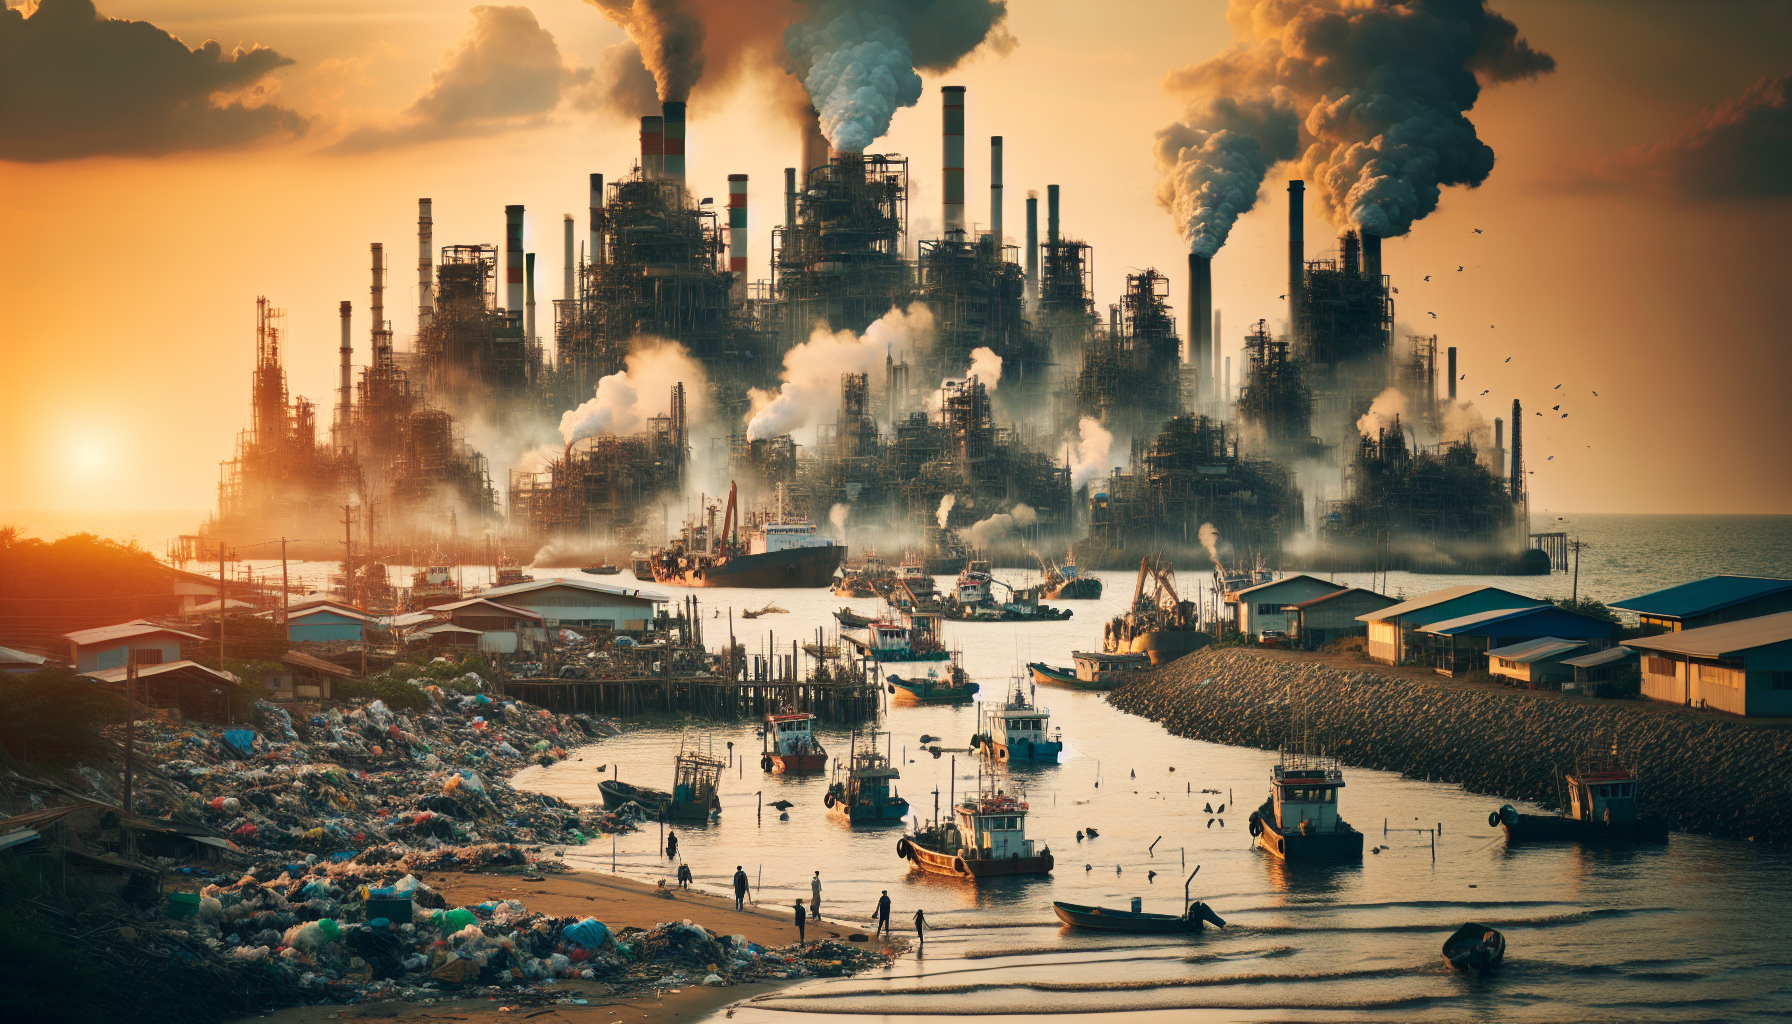 Ô nhiễm môi trường gây ra nhiều tác động tiêu cực đến cuộc sống của người dân vùng biển.